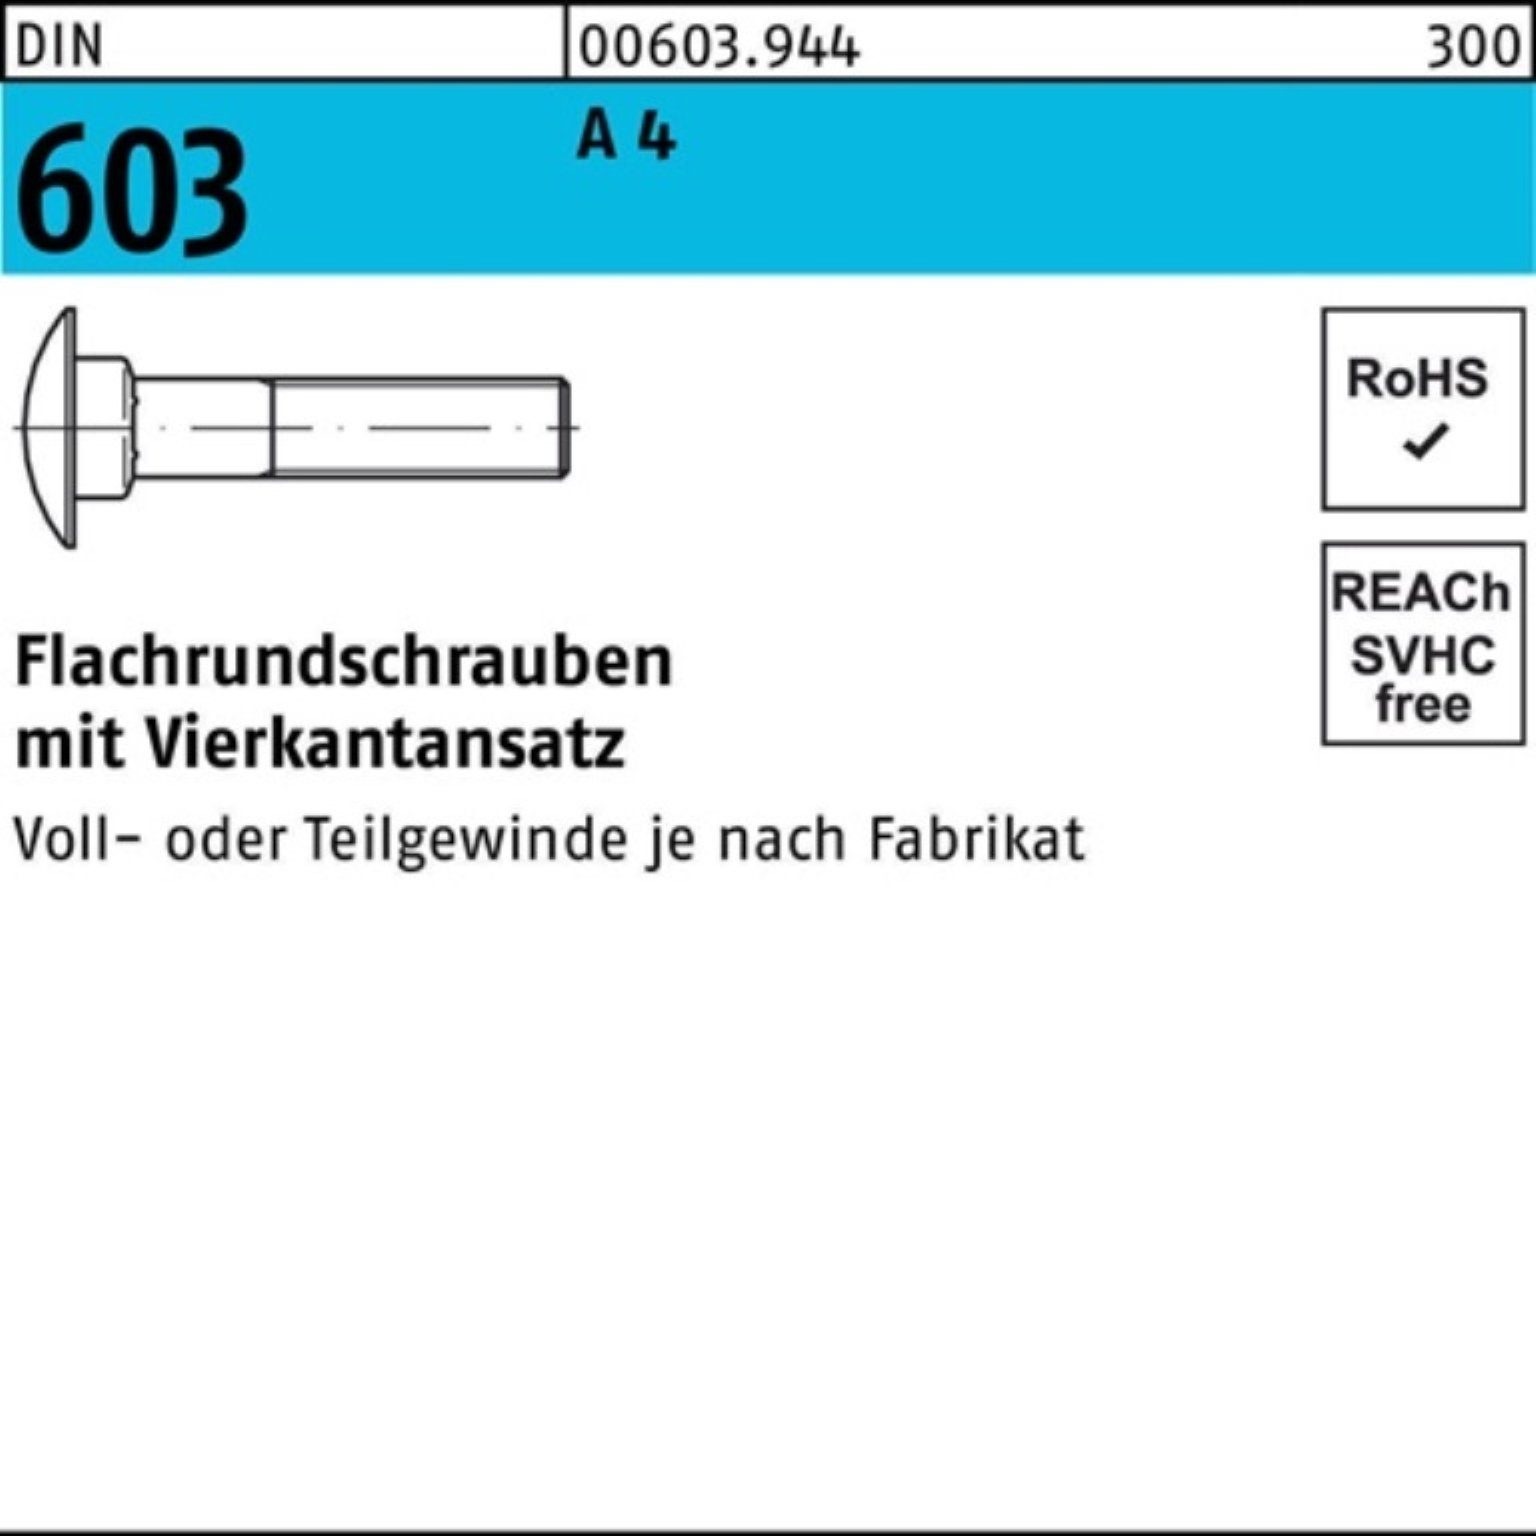 Reyher Schraube 100er Pack Flachrundschraube DIN 603 Vierkantansatz M8x 60 A 4 10 Stü